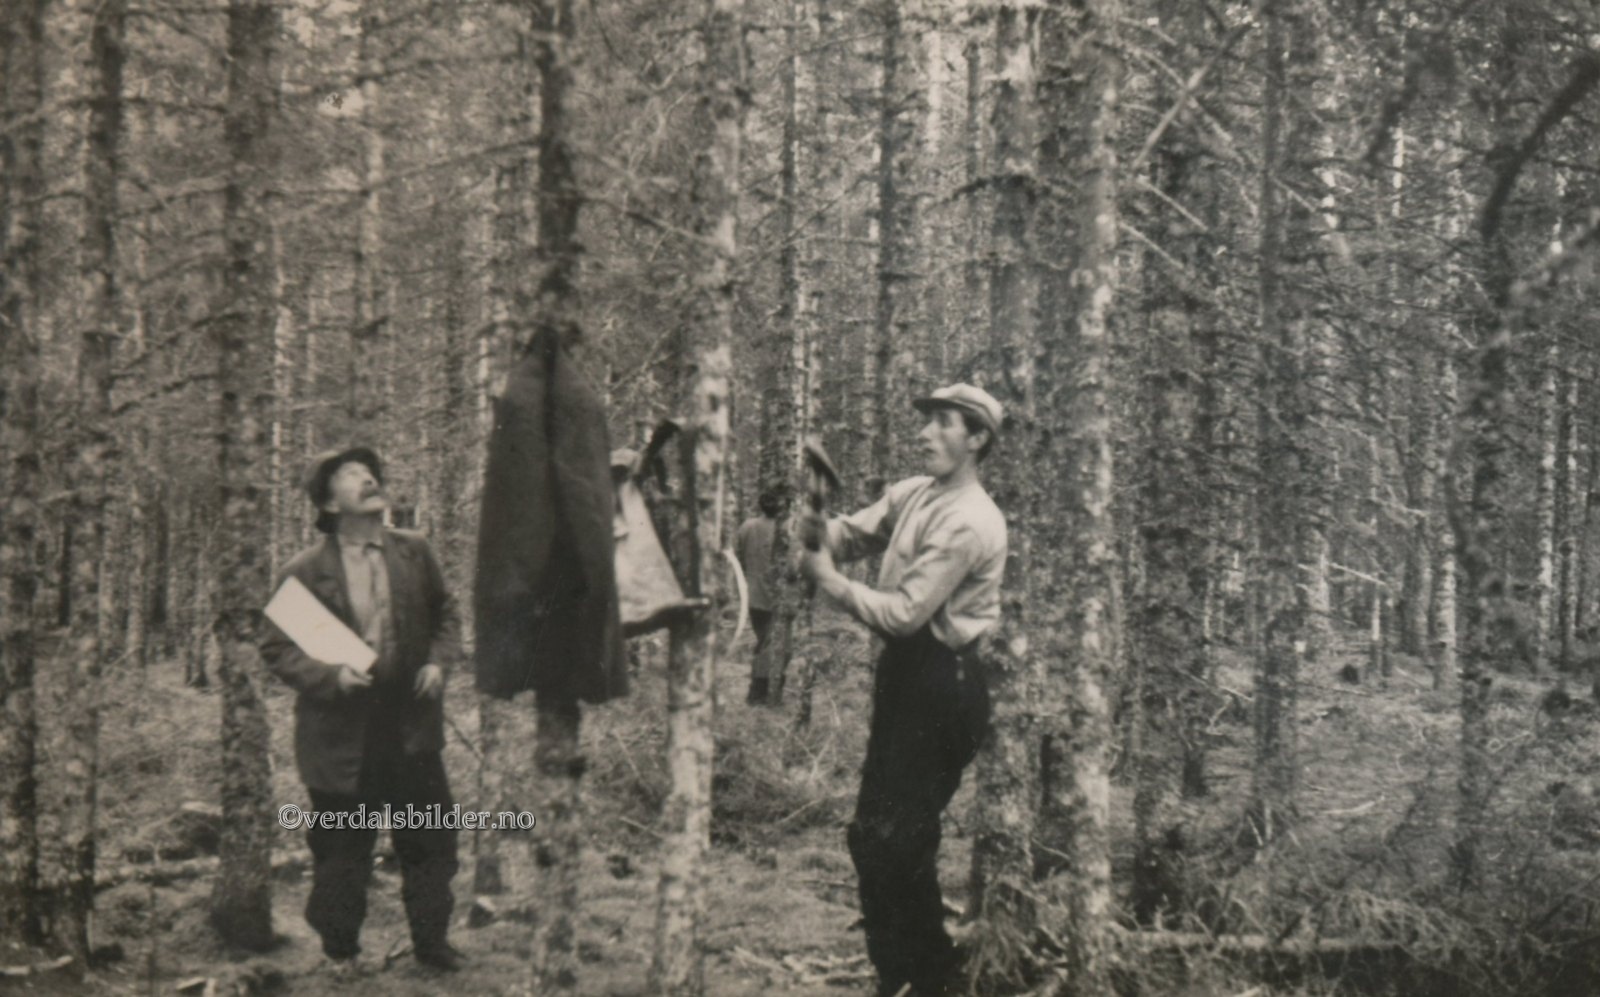  Utlånt med navn av Værdalsbruket AS. Figenschou var ansatt som skogformann i Helgådalen-Vera i perioden 1906 til 1952, da han fratrådte ved oppnådd aldersgrense etter 46 år i stillingen.